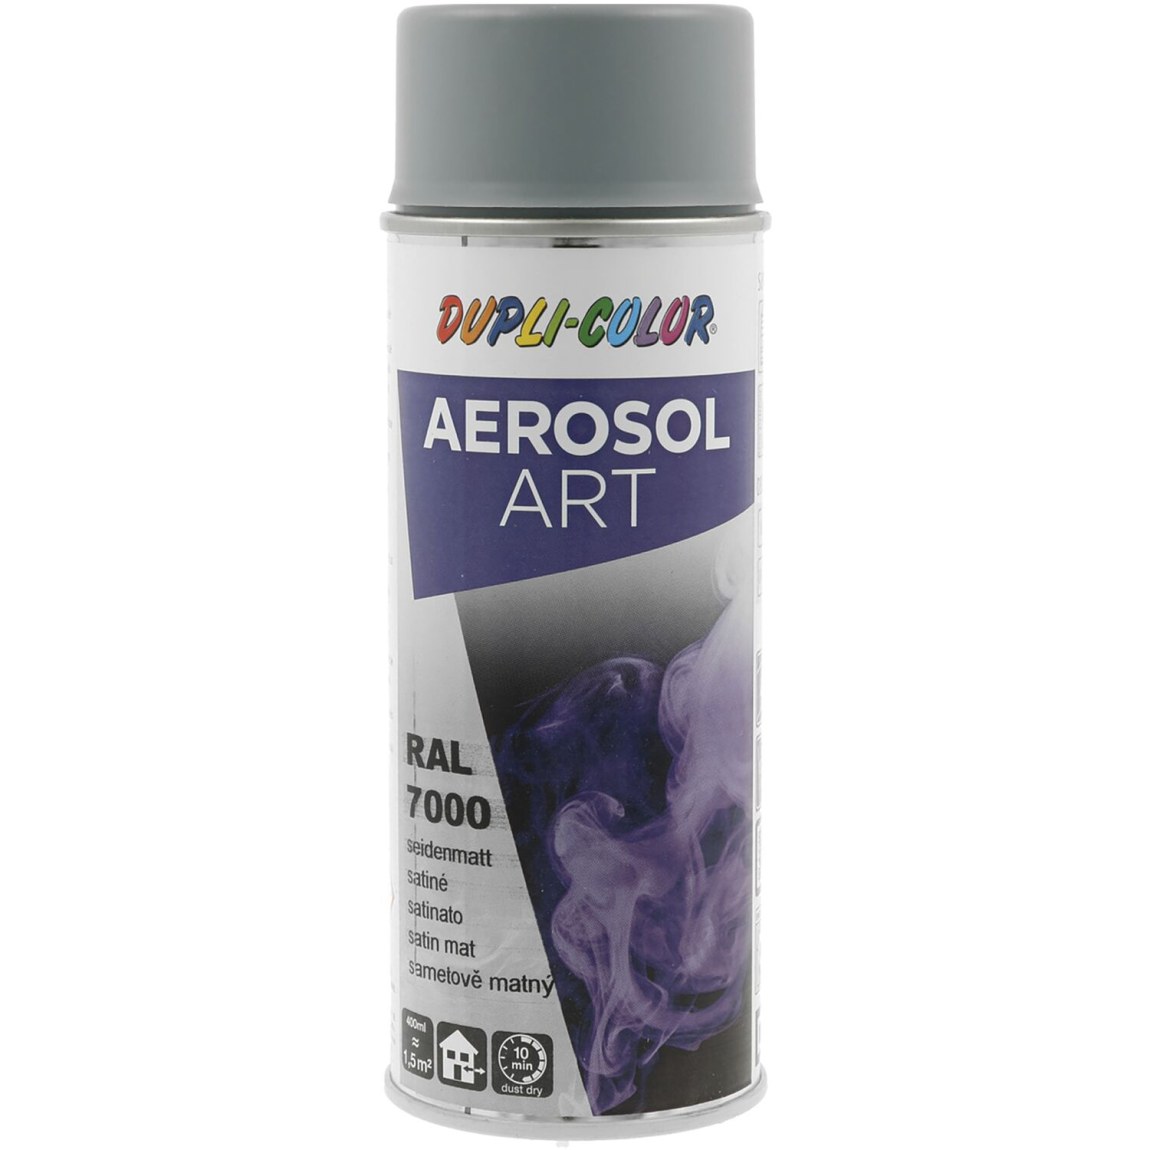 Dupli-Color Aerosol Art sprej 400 ml veverčí šedá hedv.mat / RAL 7000 - Železářství Chemicko-technické výrobky Technické aerosoly Lak ve Spreji